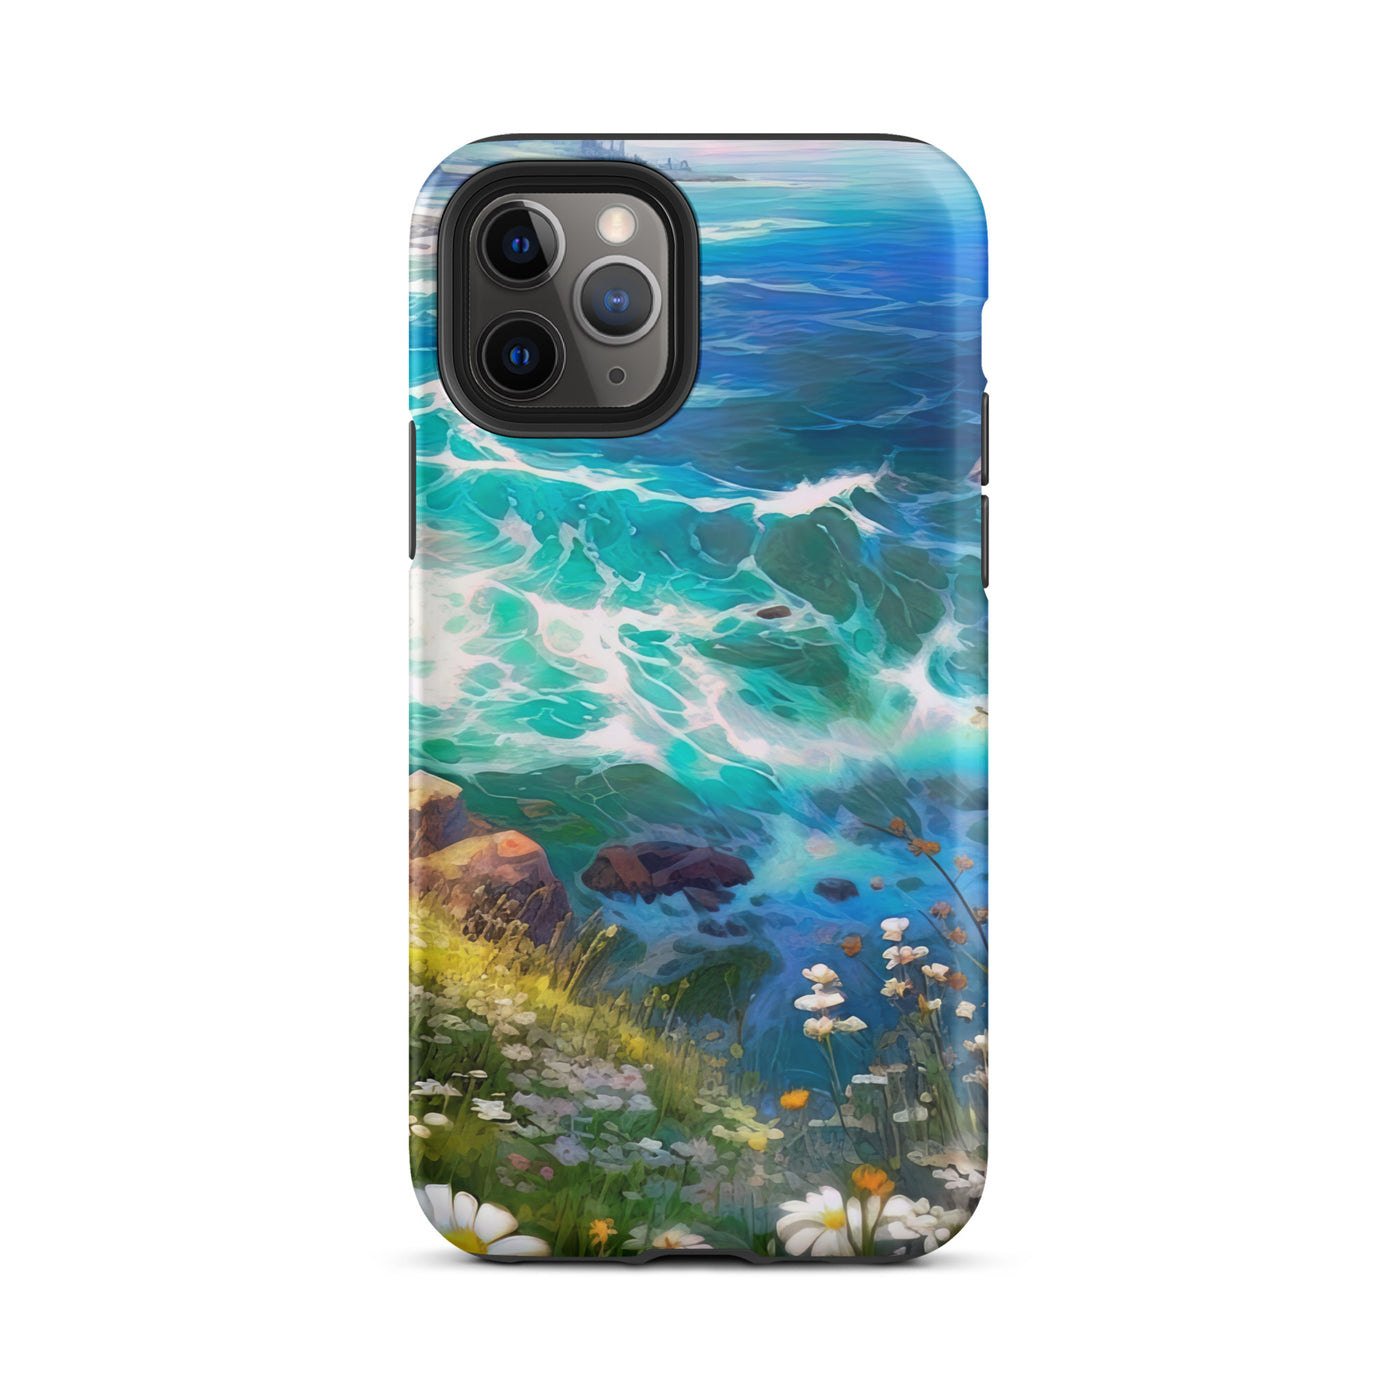 Berge, Blumen, Fluss und Steine - Malerei - iPhone Schutzhülle (robust) camping xxx iPhone 11 Pro